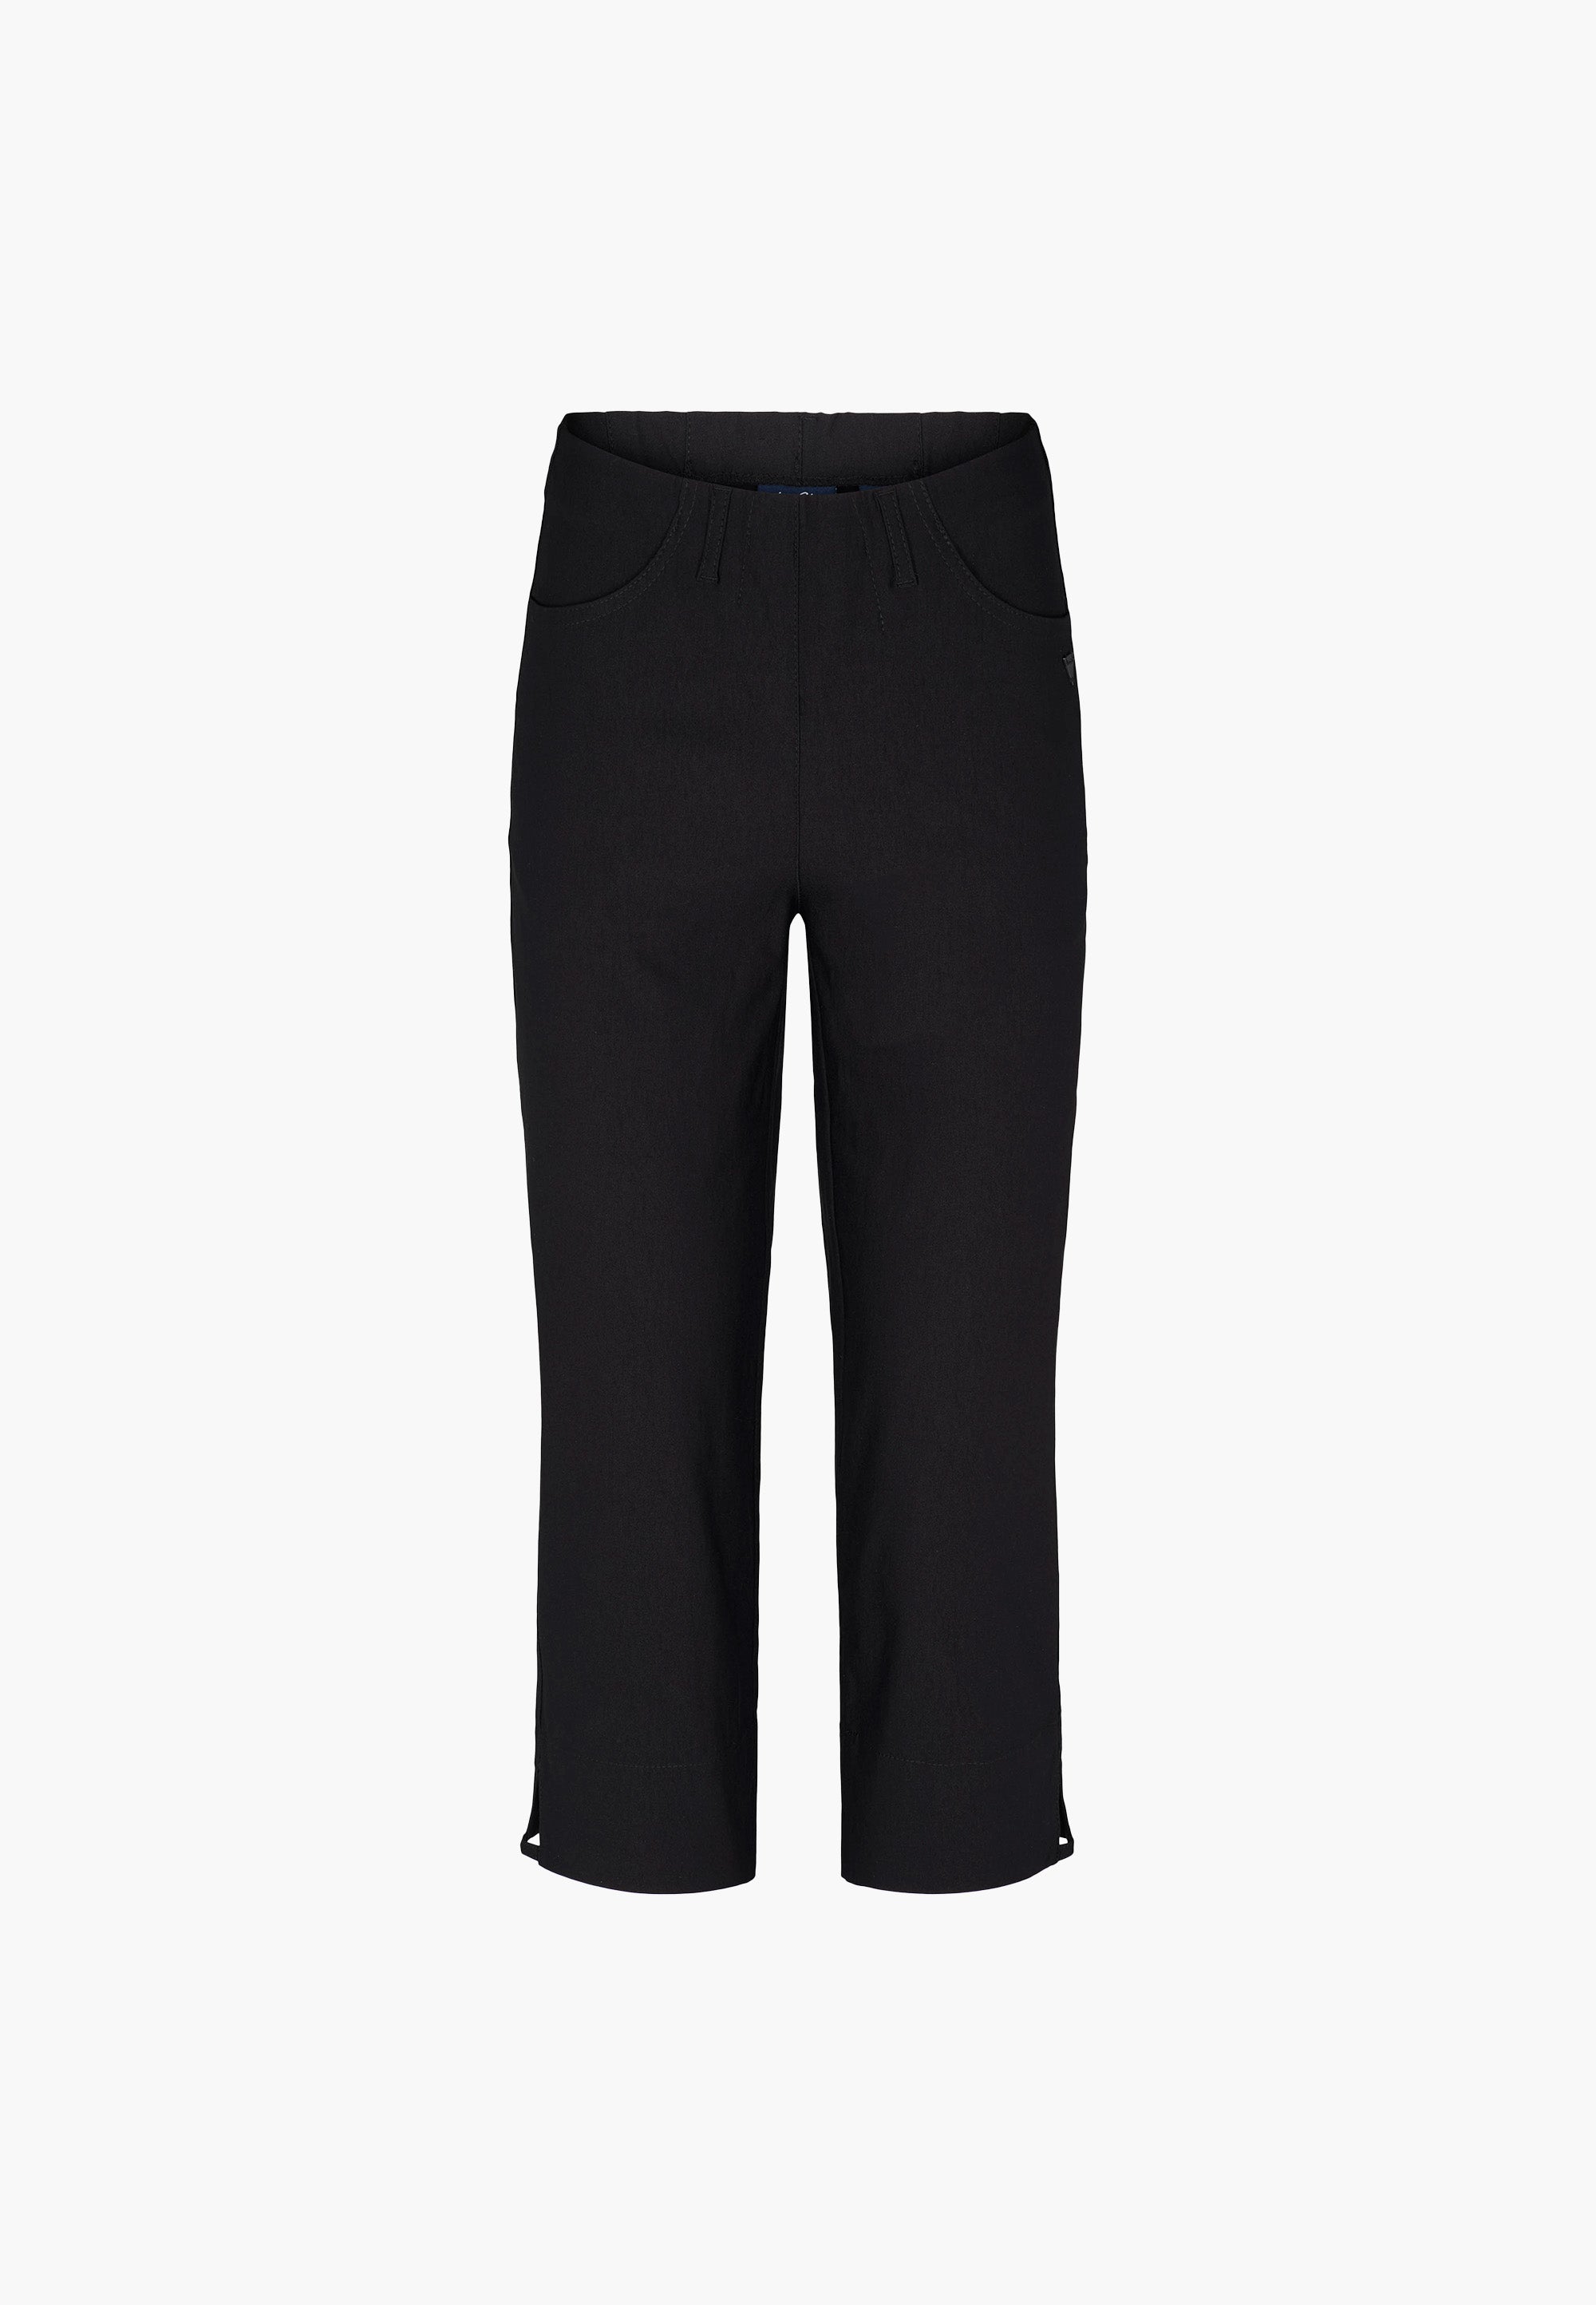 LAURIE  Anabelle Regular Capri ML Trousers REGULAR 99970 Black